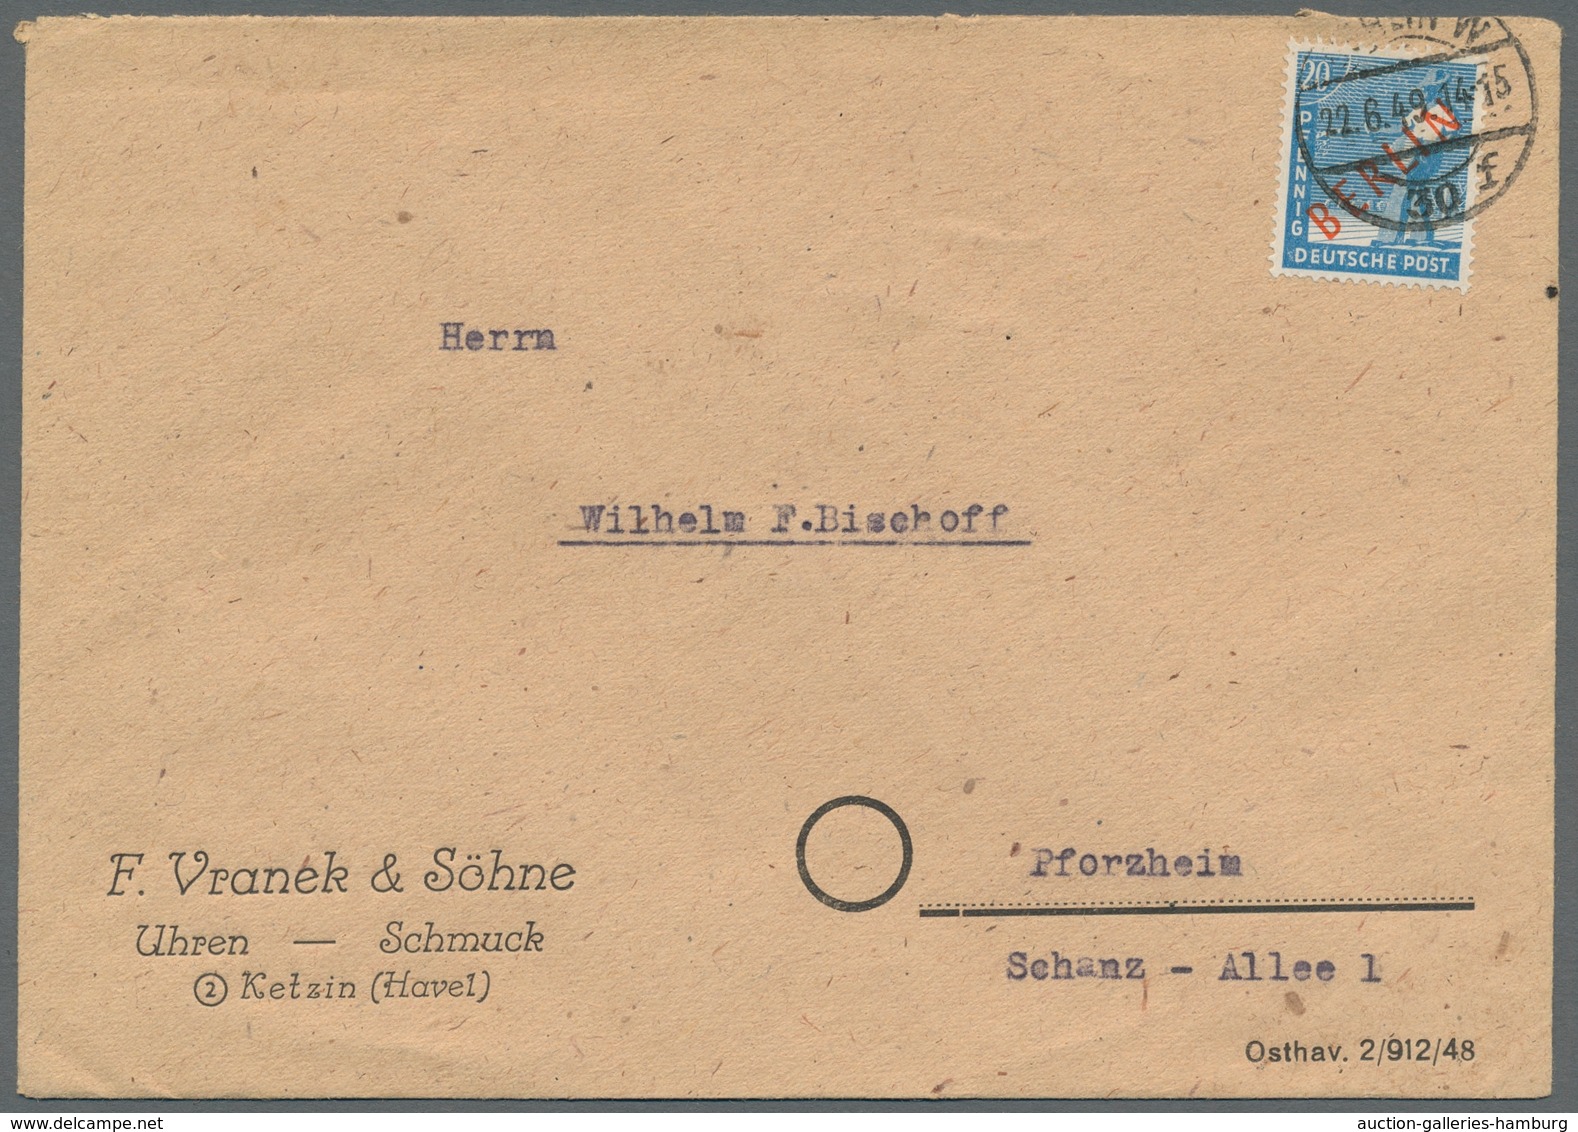 Berlin: 1949, "Rotaufdruck", kleine Zusammenstellung von elf portorichtigen EF in guter/sehr guter E